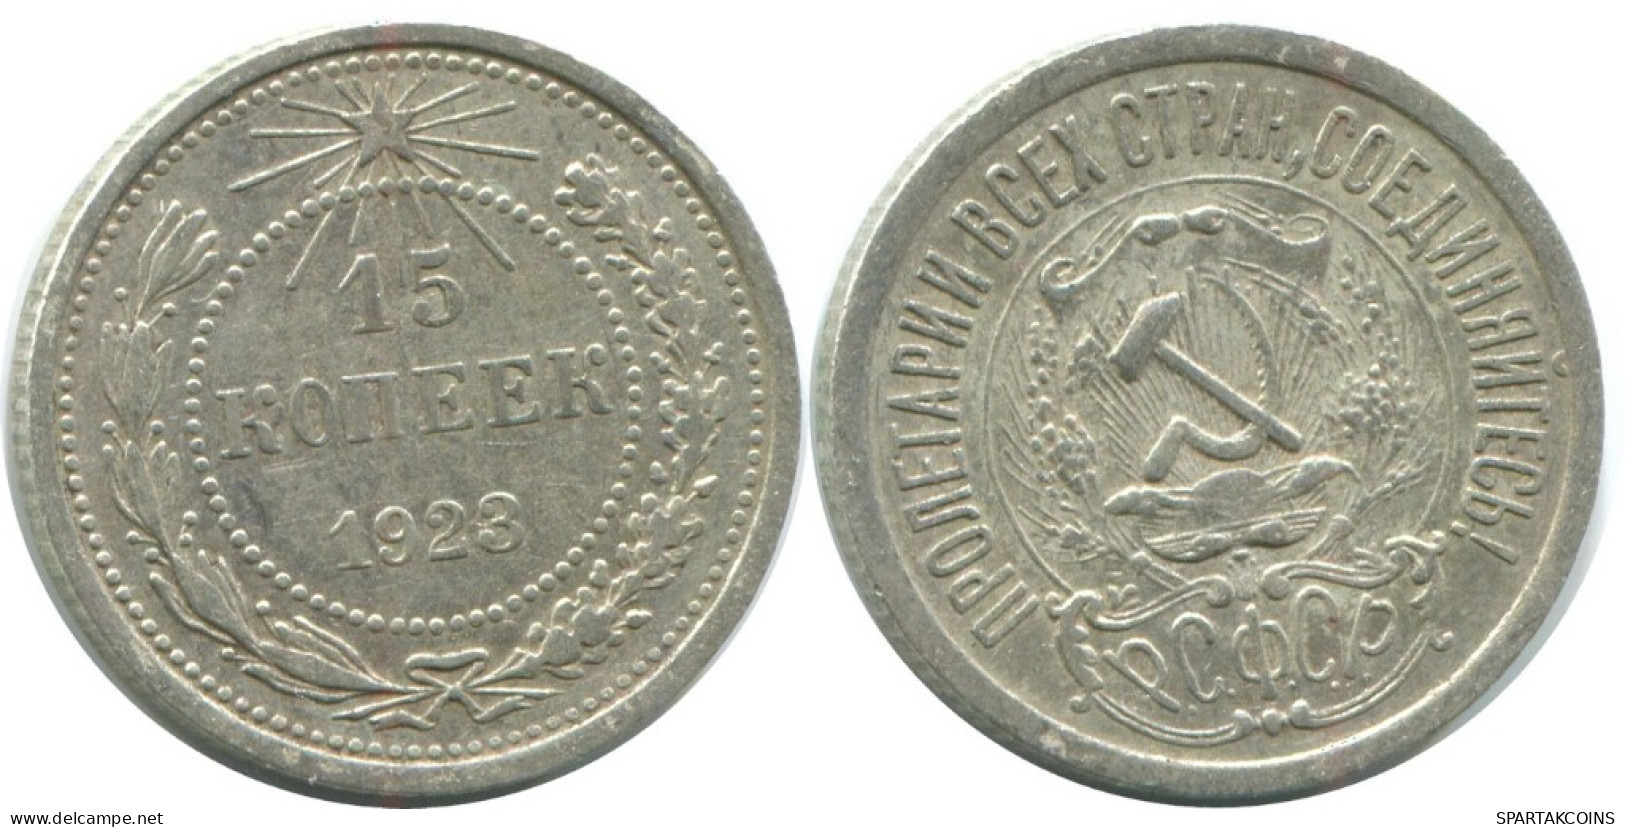 15 KOPEKS 1923 RUSSLAND RUSSIA RSFSR SILBER Münze HIGH GRADE #AF151.4.D.A - Rusia